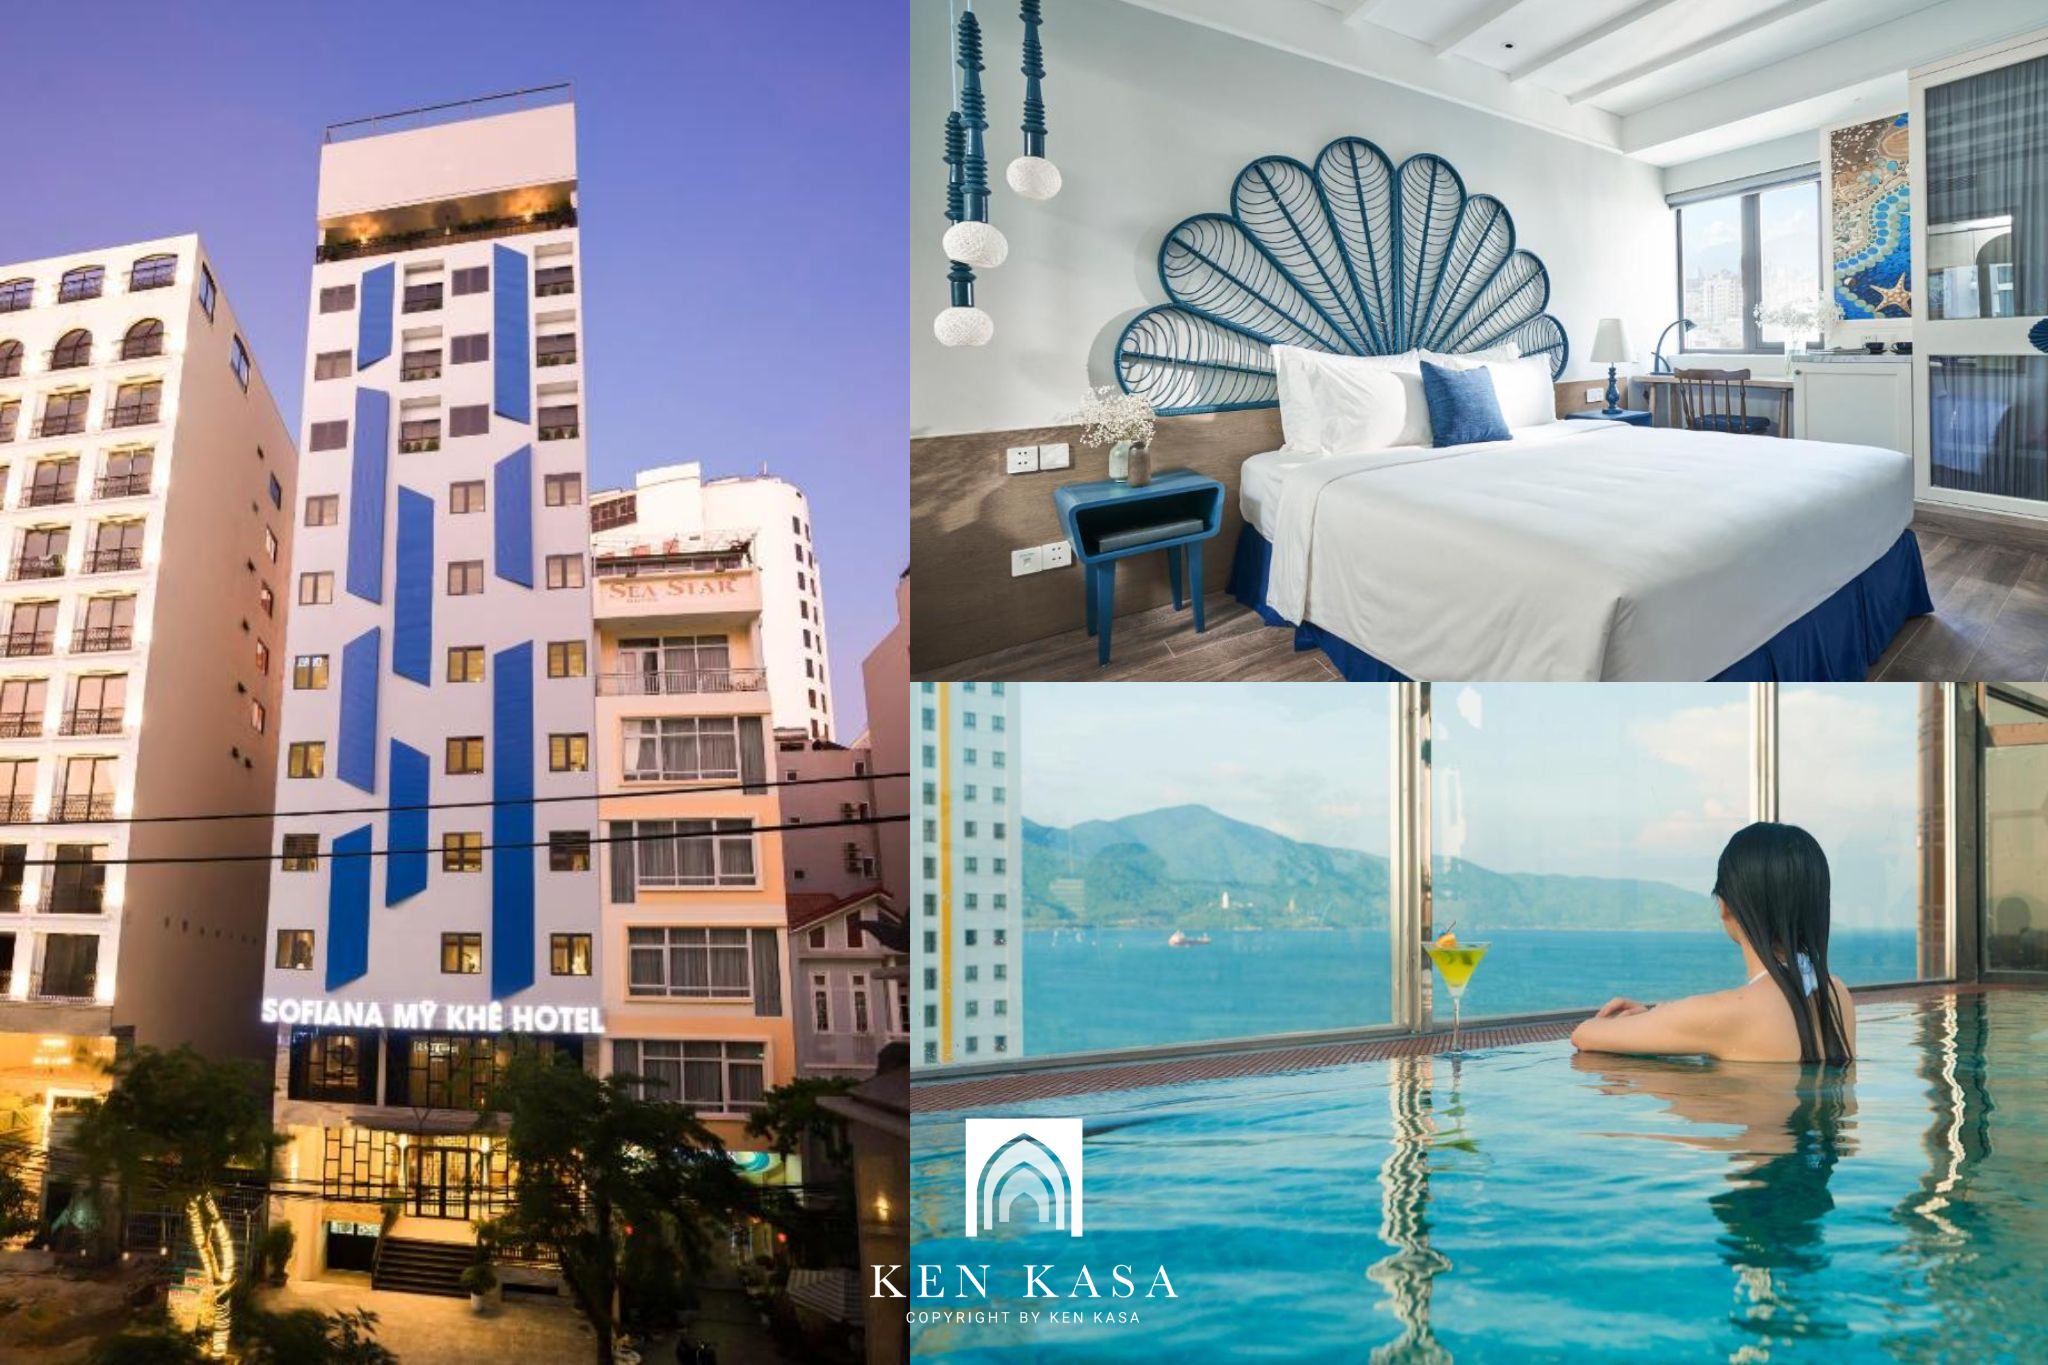 Review Sofiana My Khe Hotel & Spa sở hữu lối thiết kế đậm chất đại dương